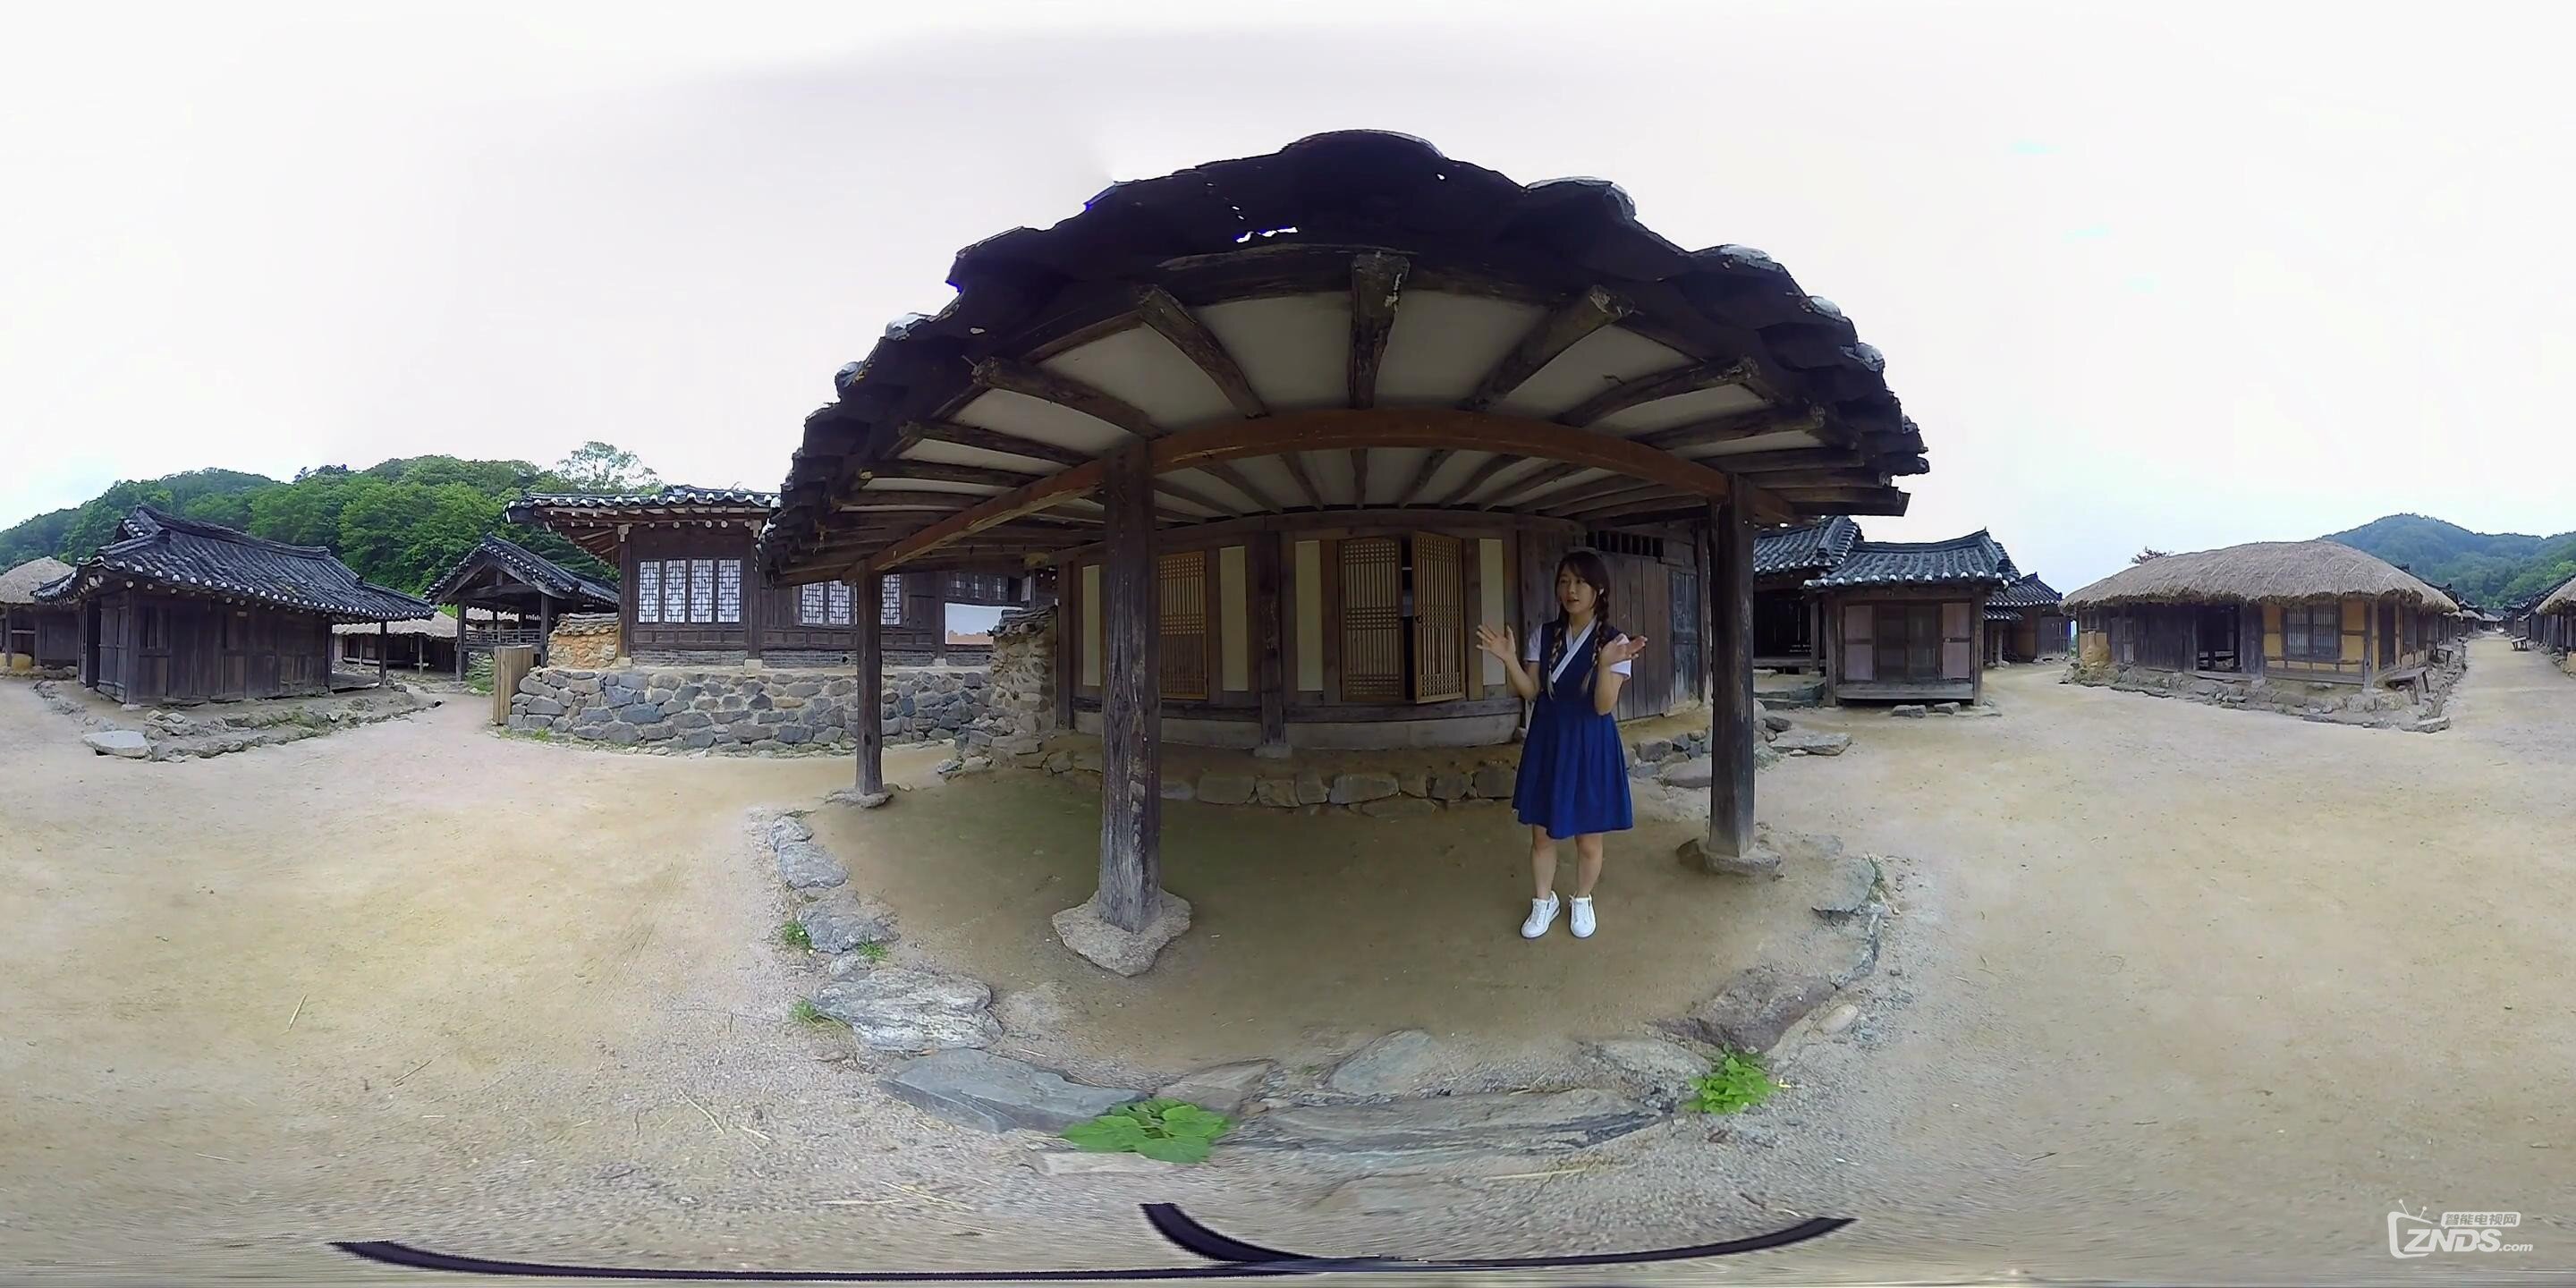 全景视频:和韩国妹子汉娜一起看古代民居遗址